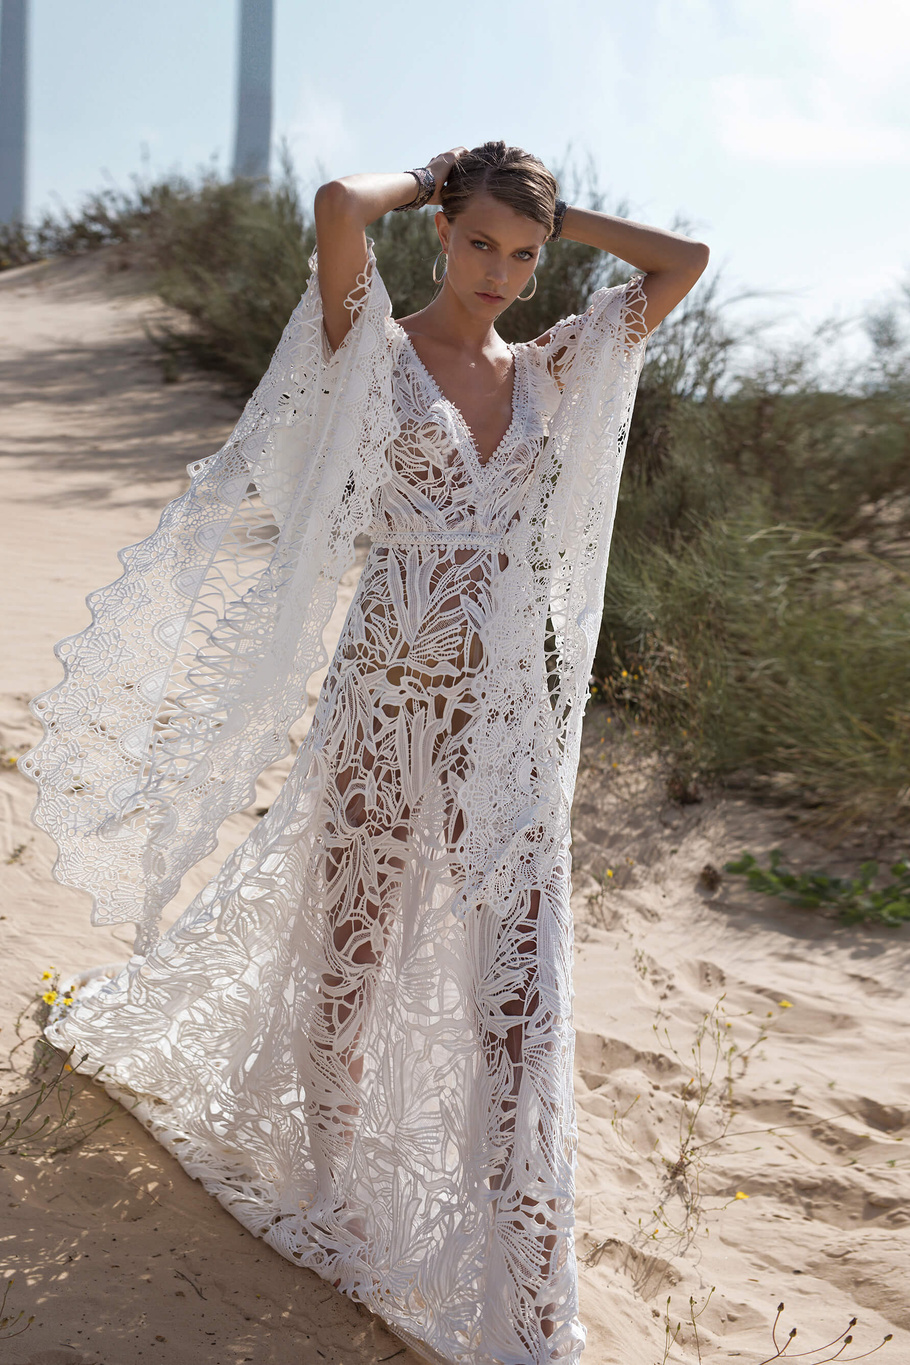 Купить свадебное платье «Дилсон» Рара Авис из коллекции Вайлд Соул 2019 года в салоне